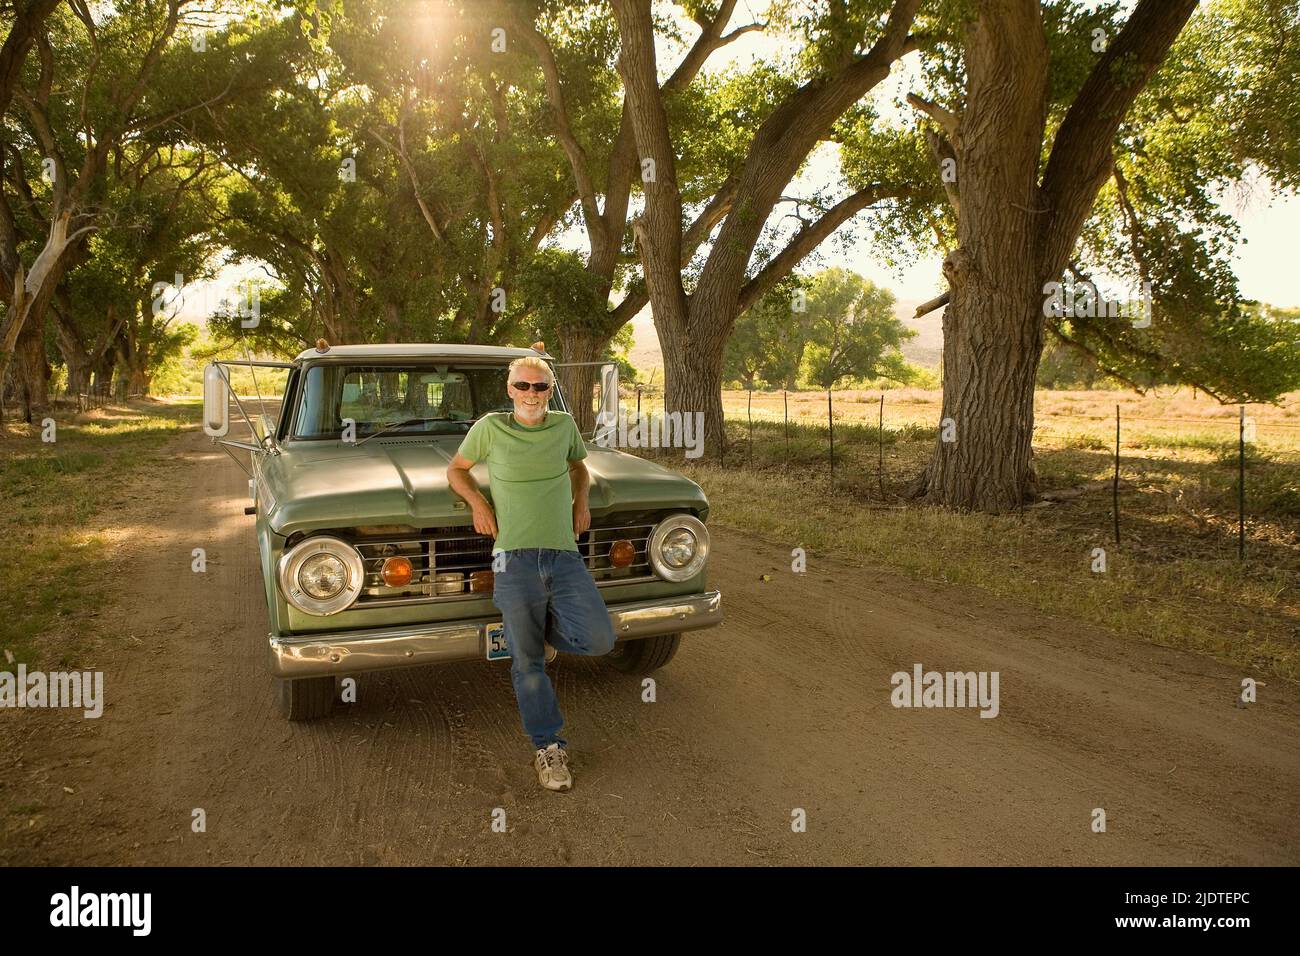 Hombre rubio (de 40 a 60 años) con barba apoyada en una camioneta vintage aparcada en una zona rural con árboles de algodón (populus fremontii) y pastos Foto de stock